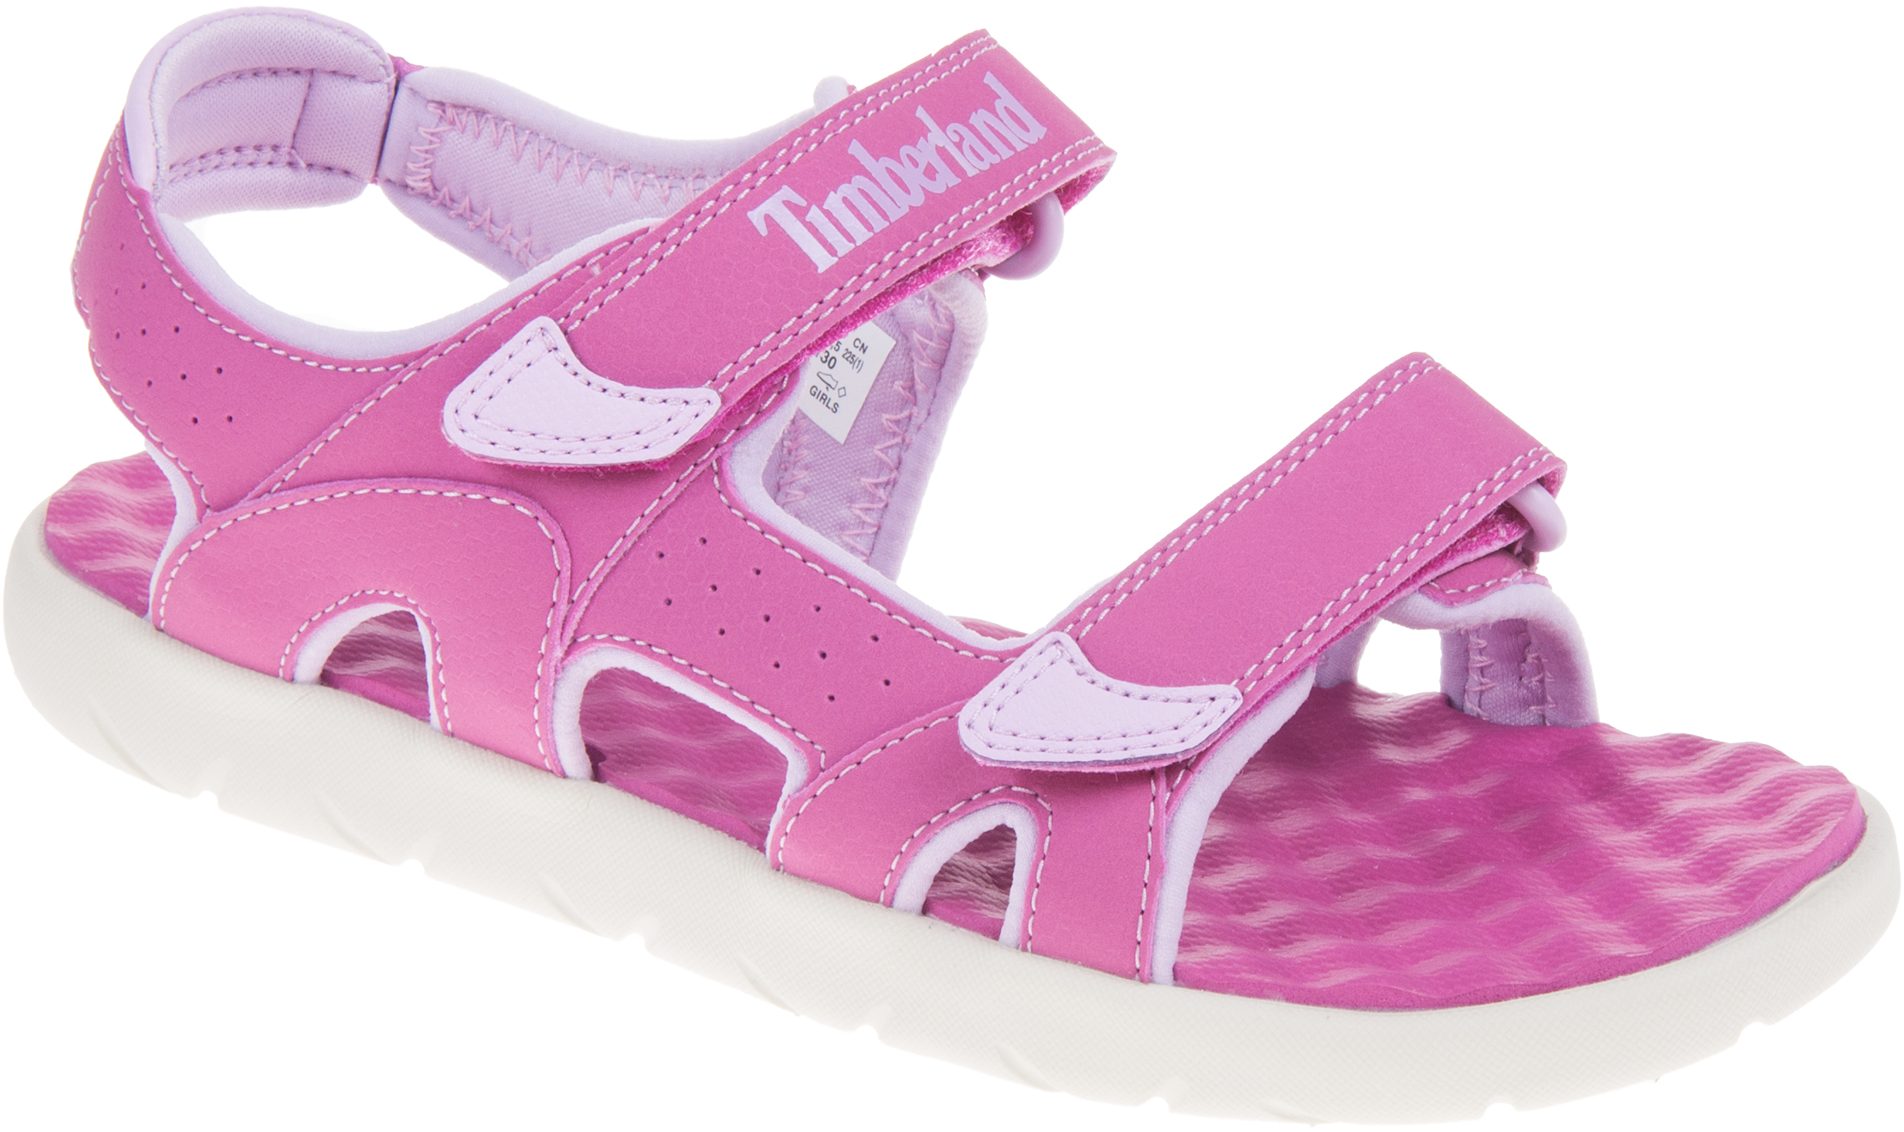 Timberland Perkins Row 2-Strap Sandal Junior Pink A1QGT - Girls Sandals ...